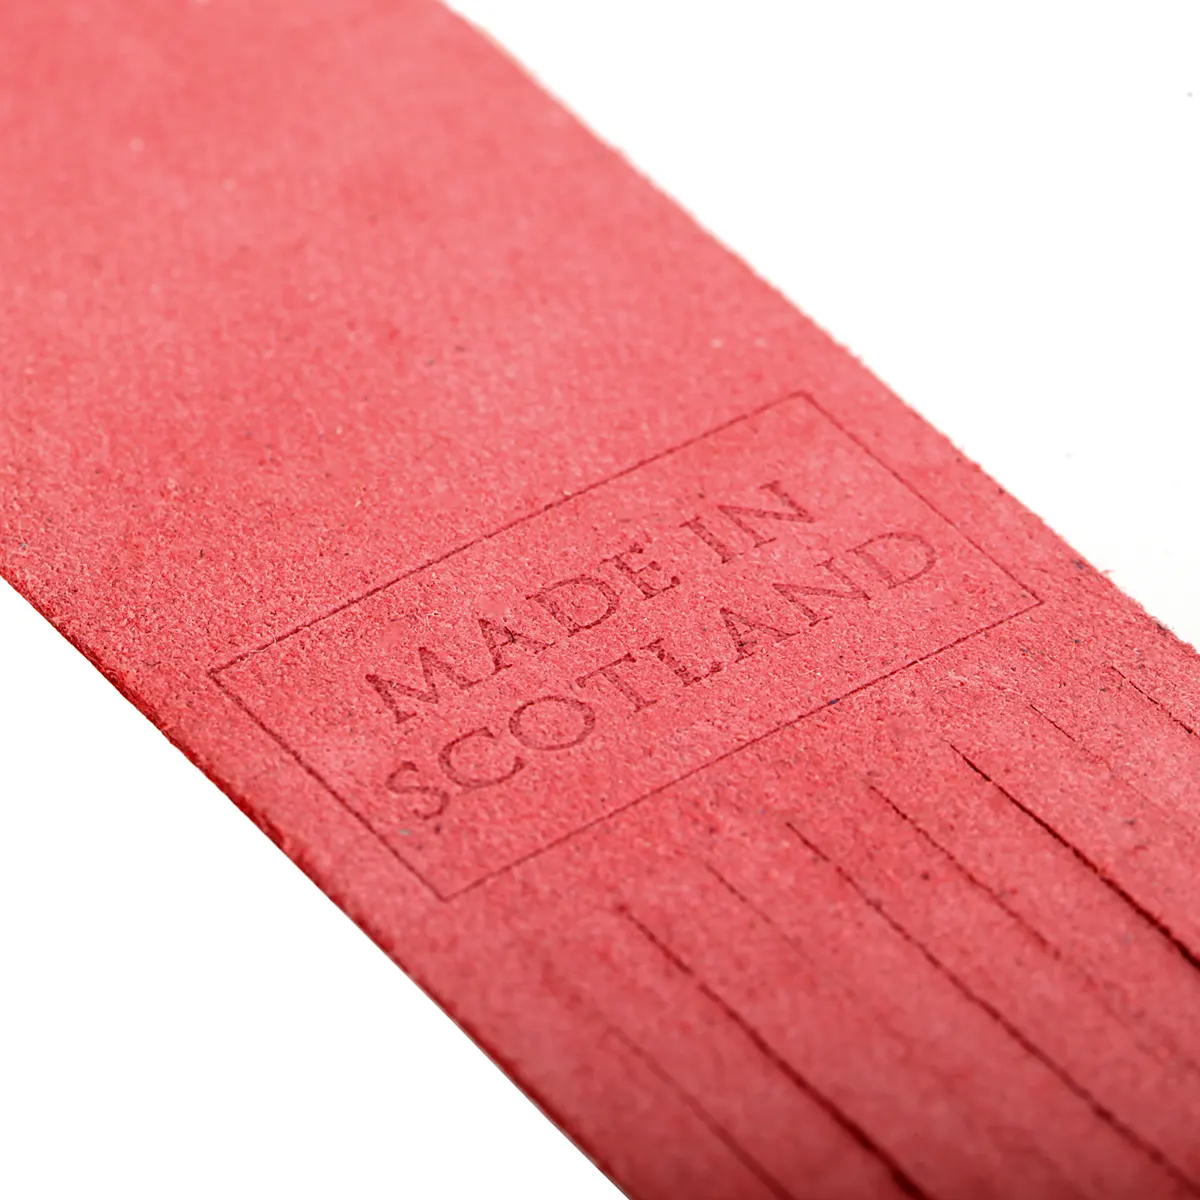 Inveraray - Lesezeichen aus Leder in Rot - Made in Scotland